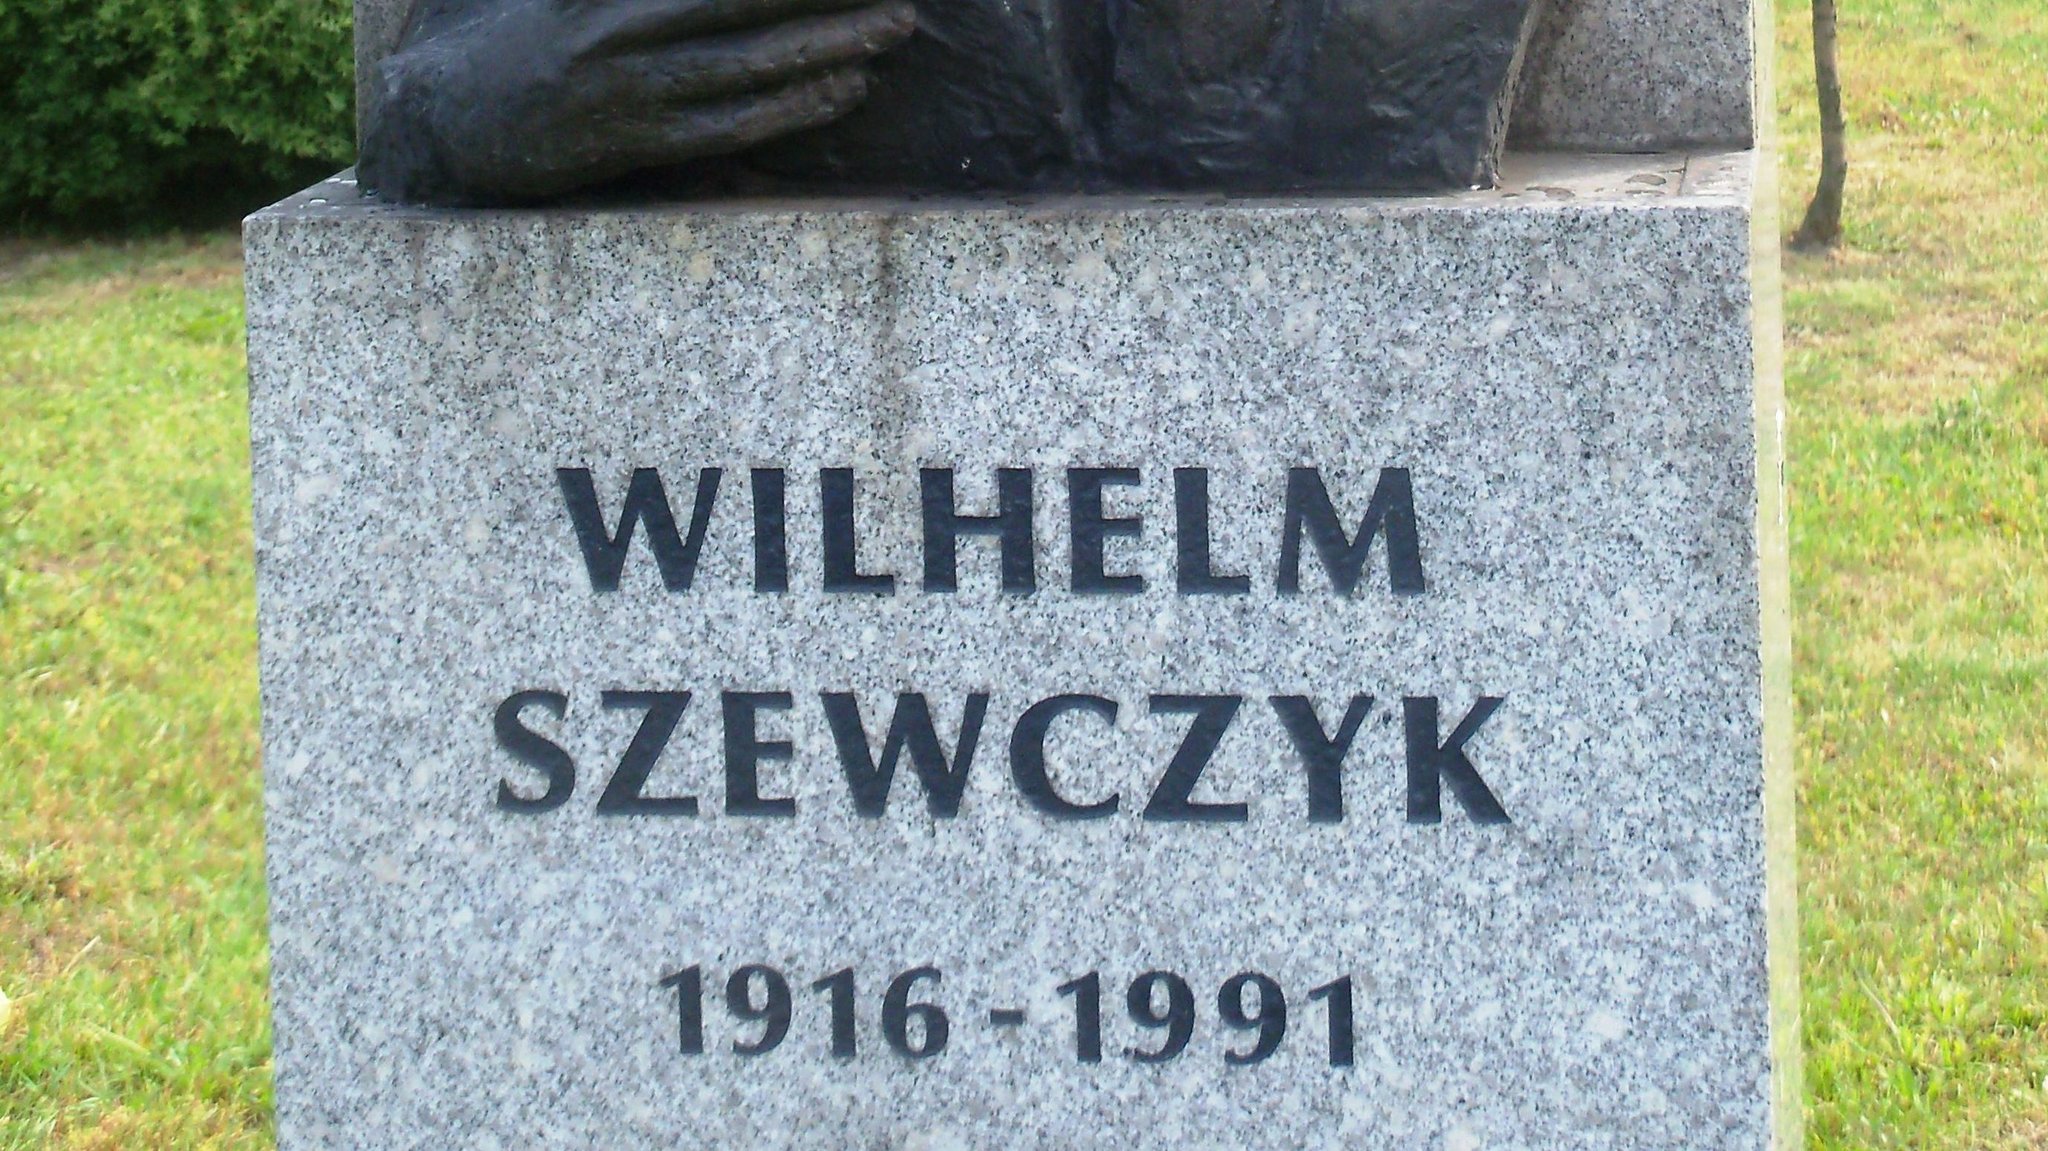 Надпись на памятнике Вильгельму Шевчику